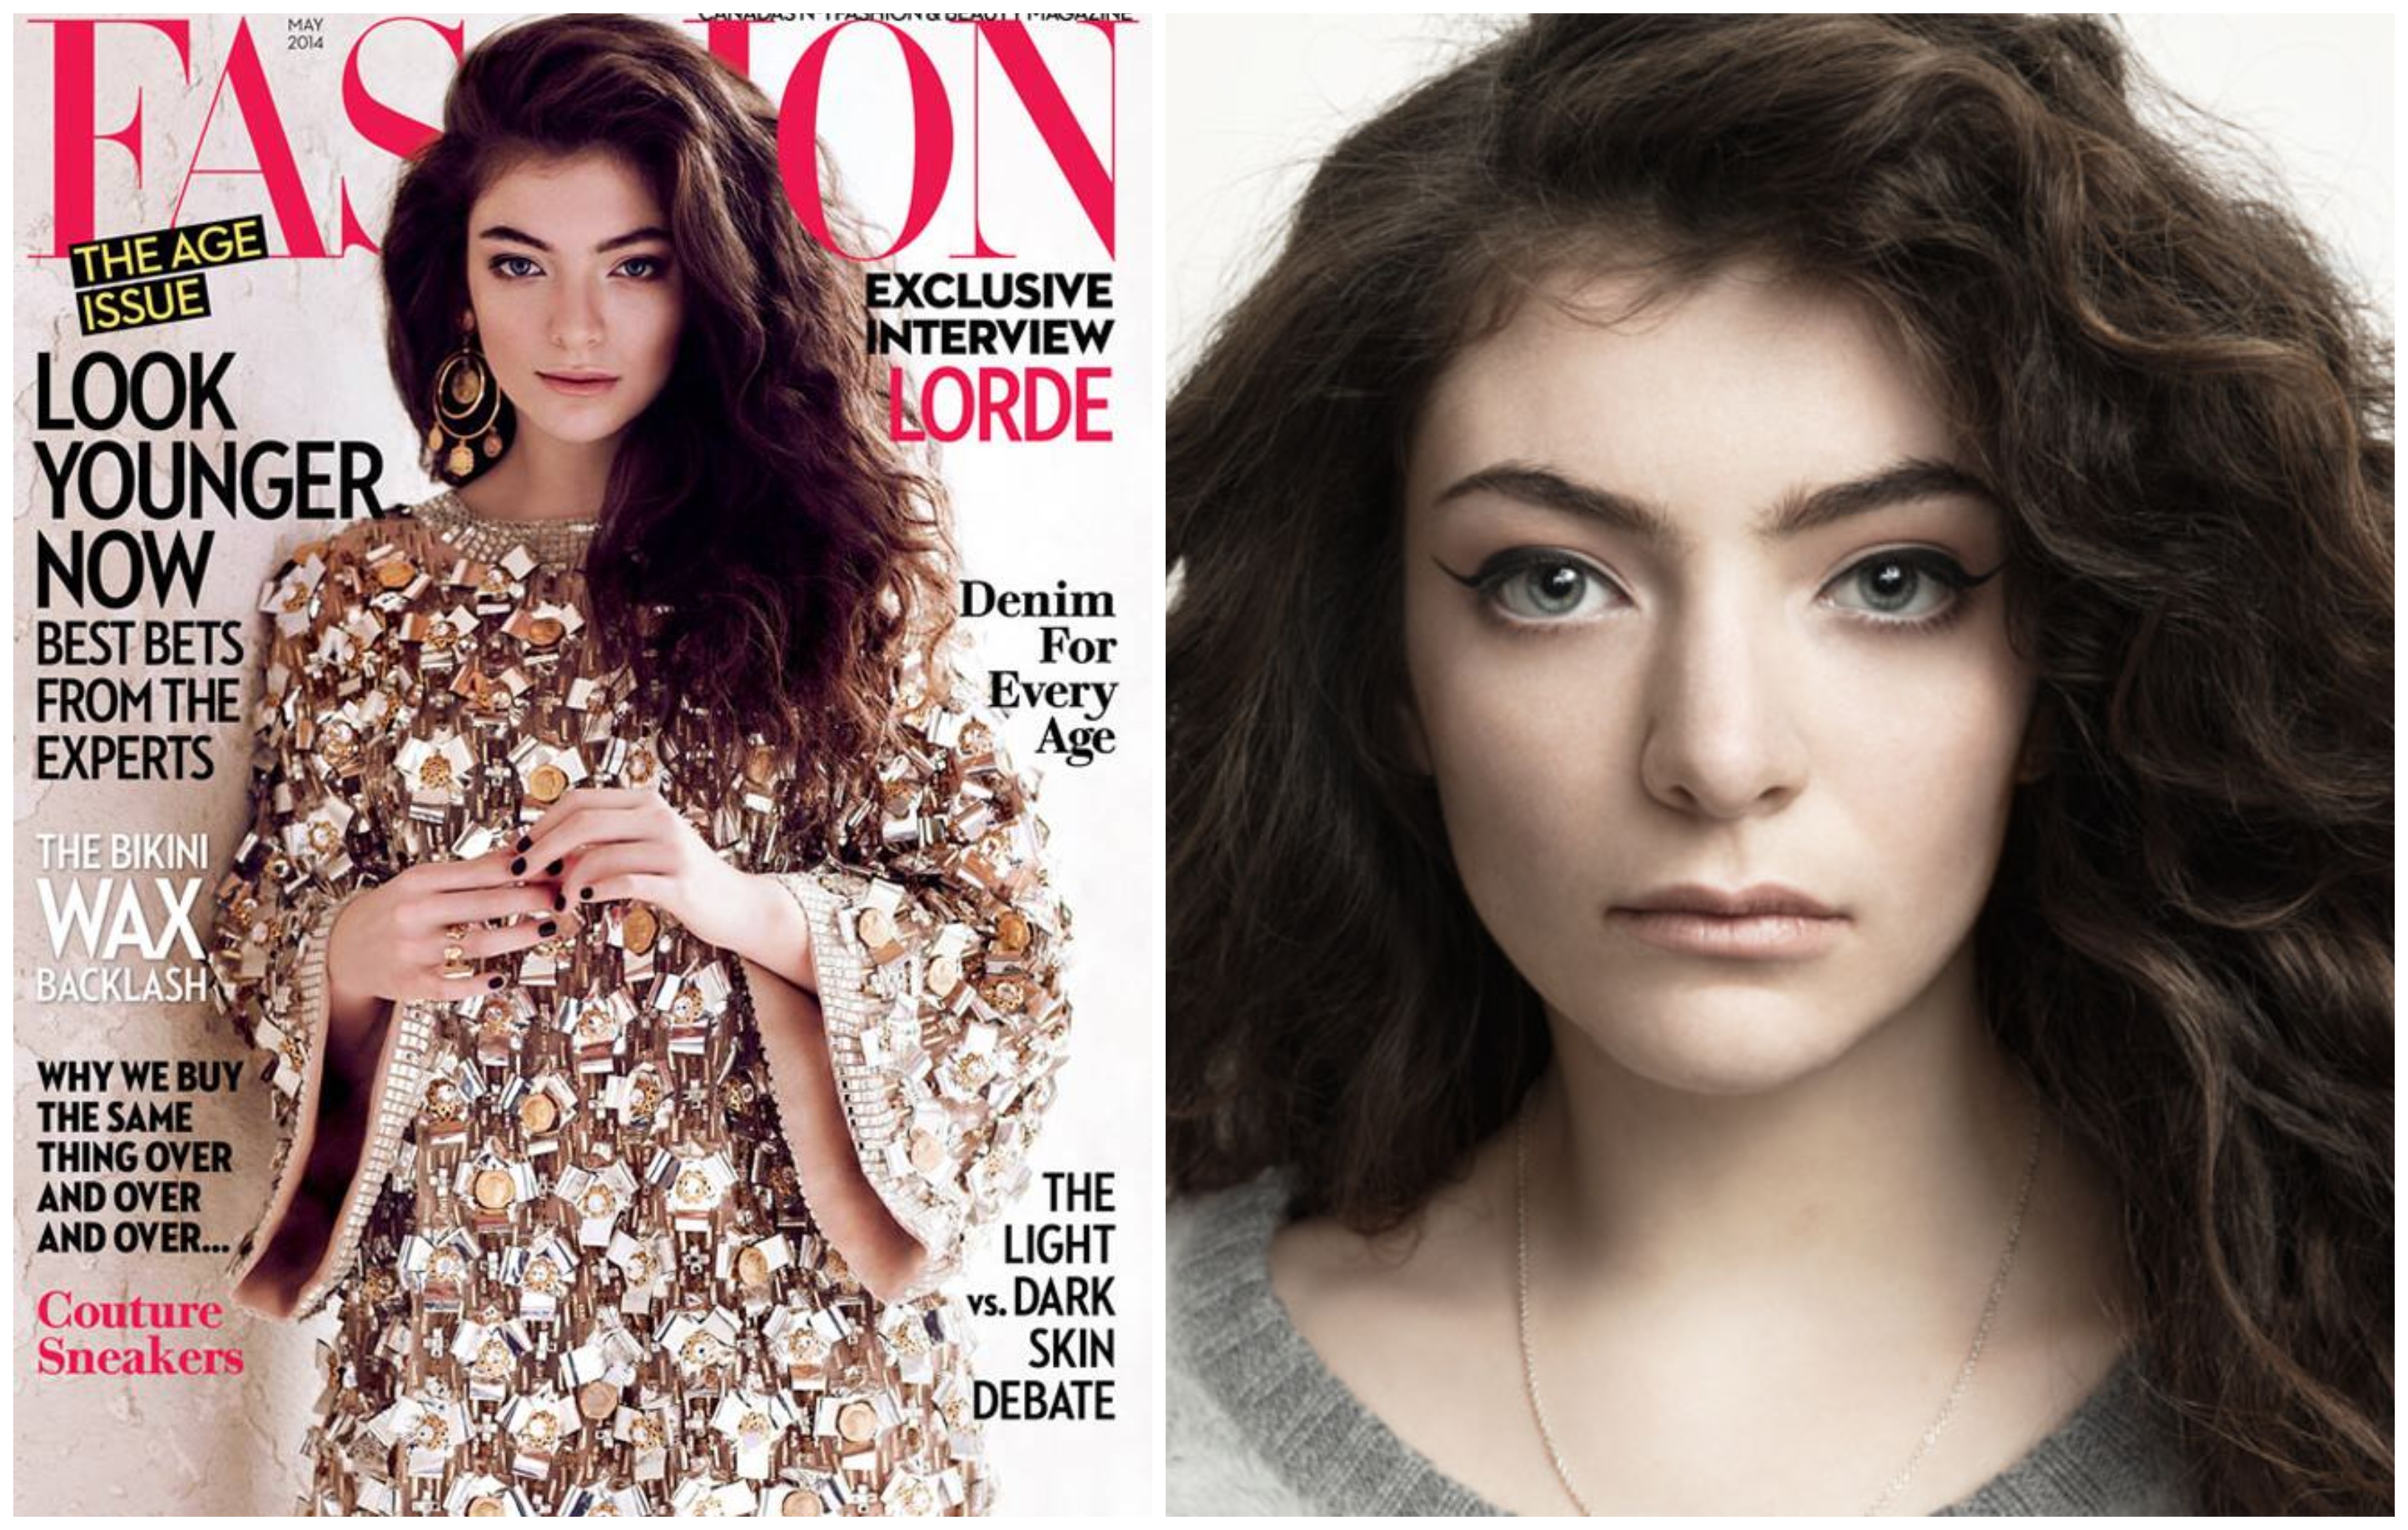 Az énekesnő, Lorde meg volt győződve róla, hogy a magazin új arcot varázsolt neki. Egy biztos: azt ismerjük fel a legkönnyebben, ha minket retusáltak, mert érezzük, hogy valami nincs a helyén. 